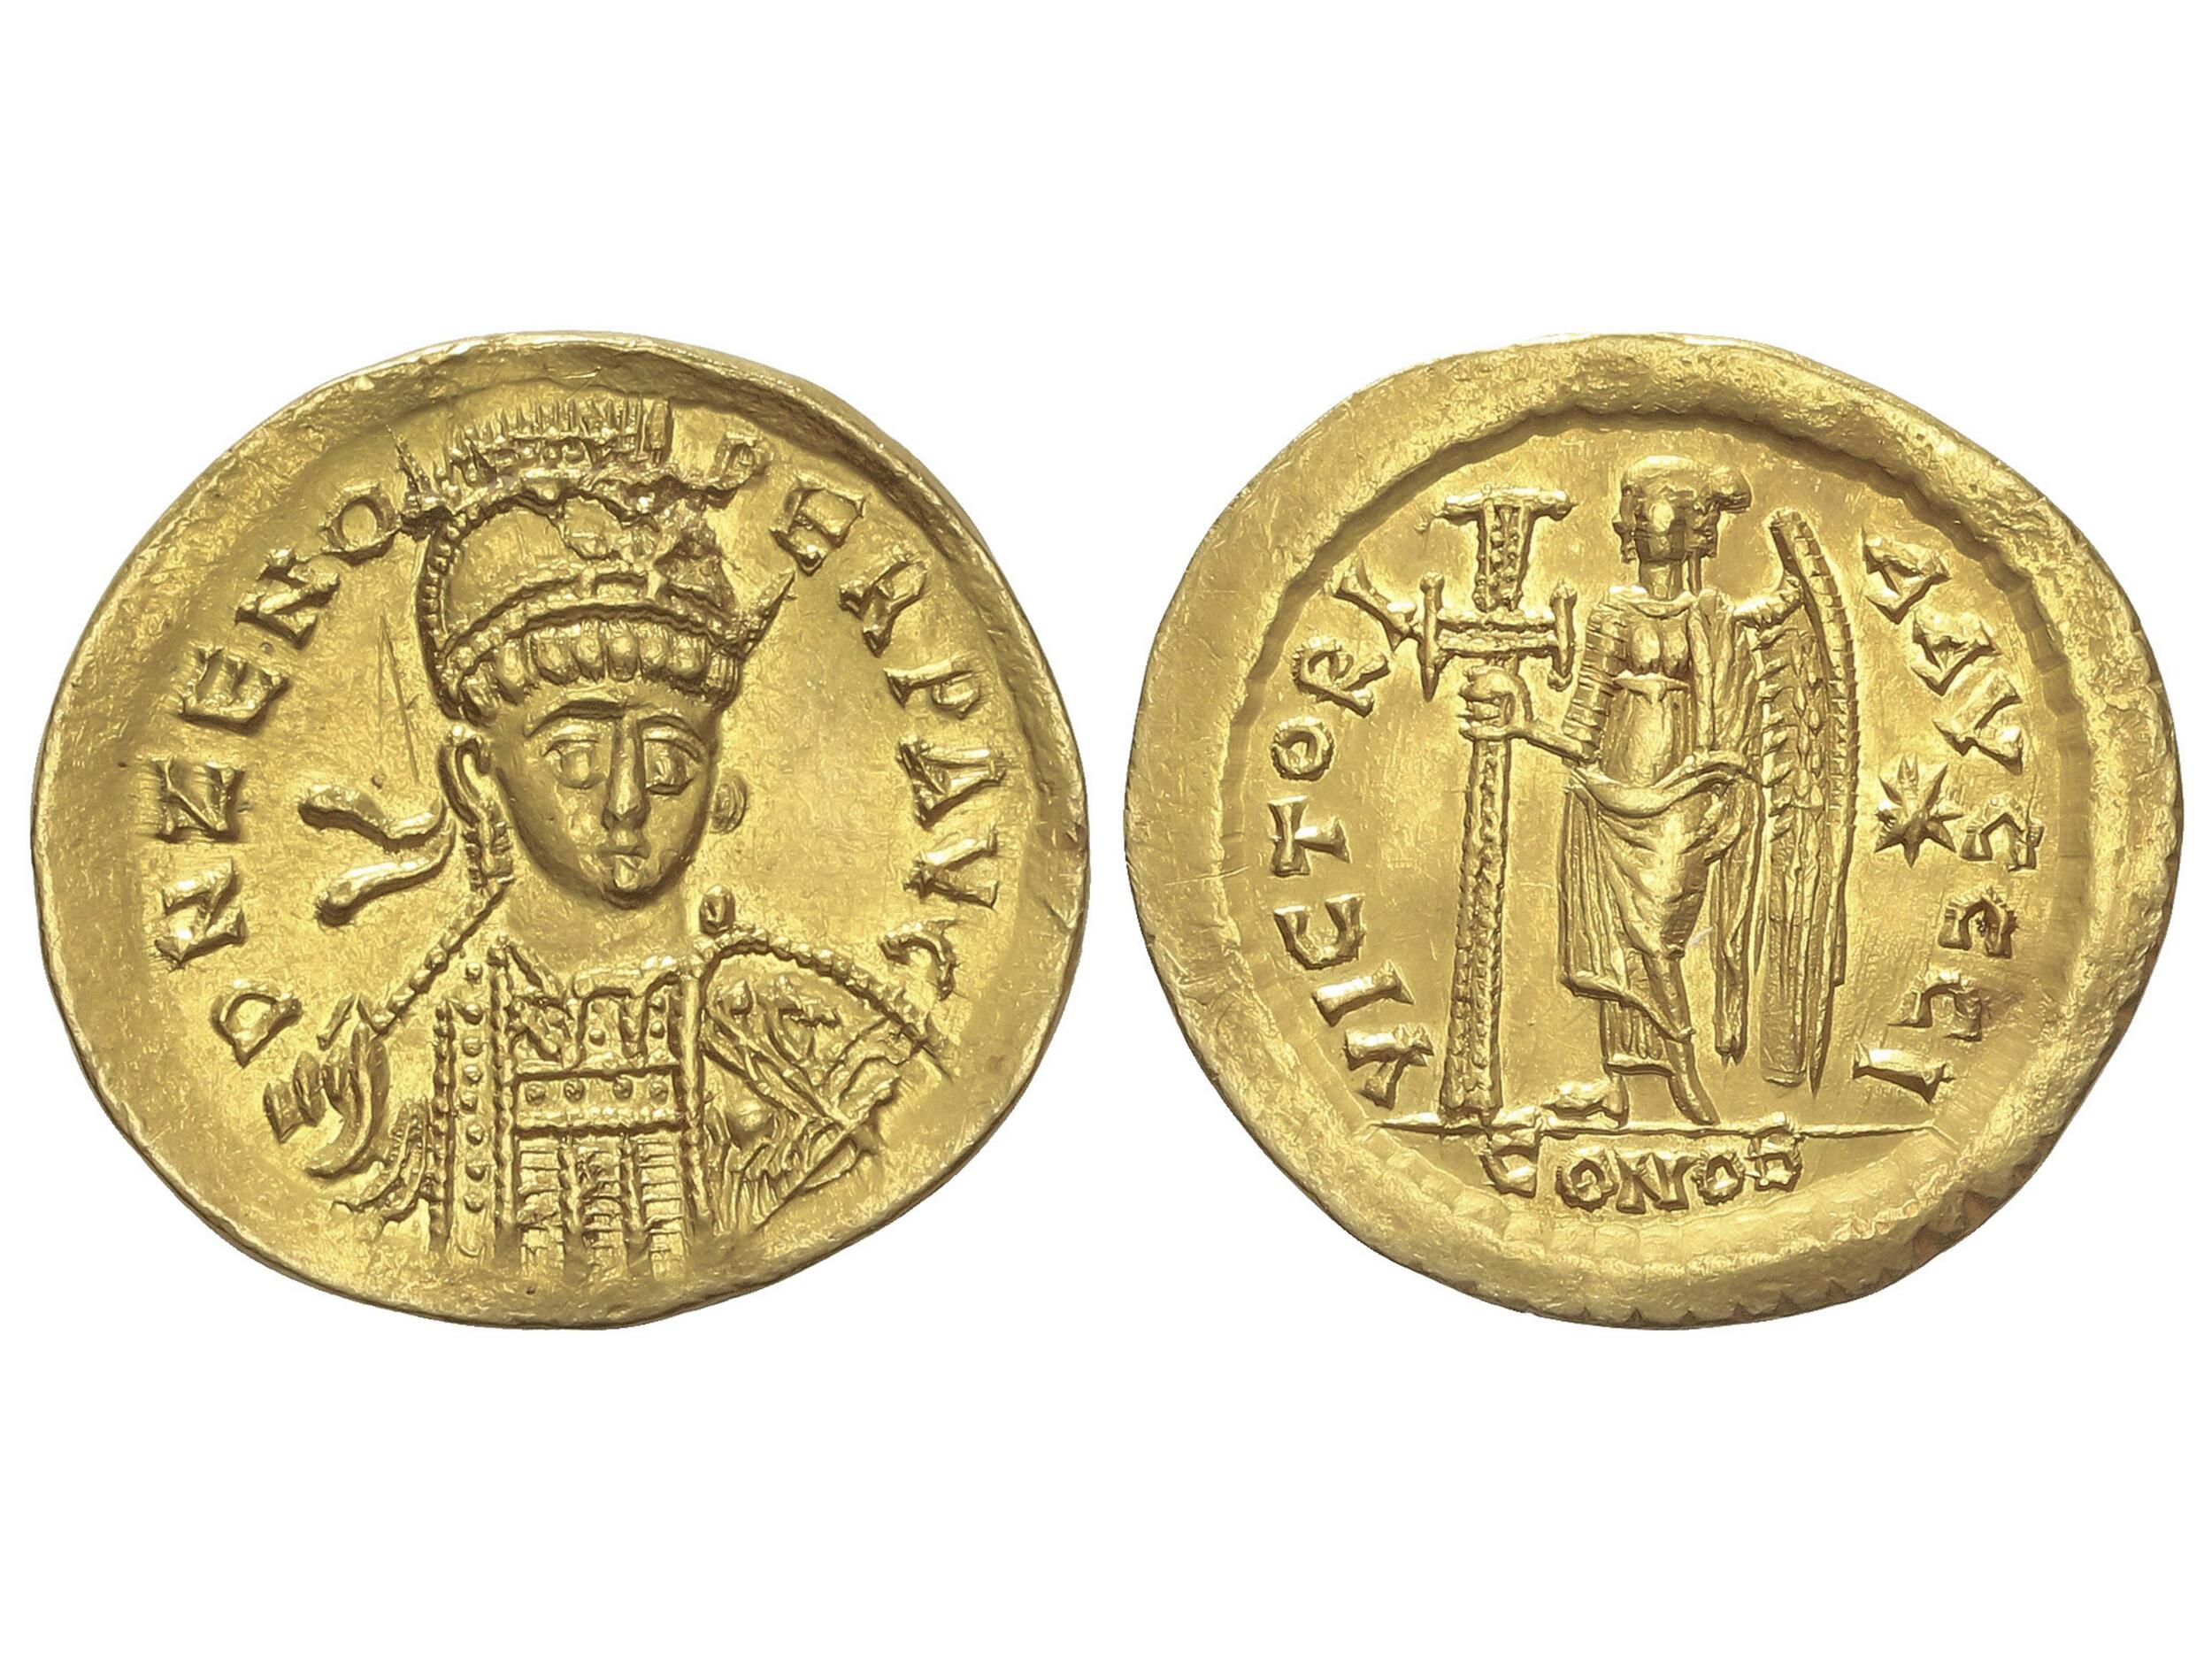 10.40.90: Antike - Oströmisches Reich - Zeno, 474 - 491